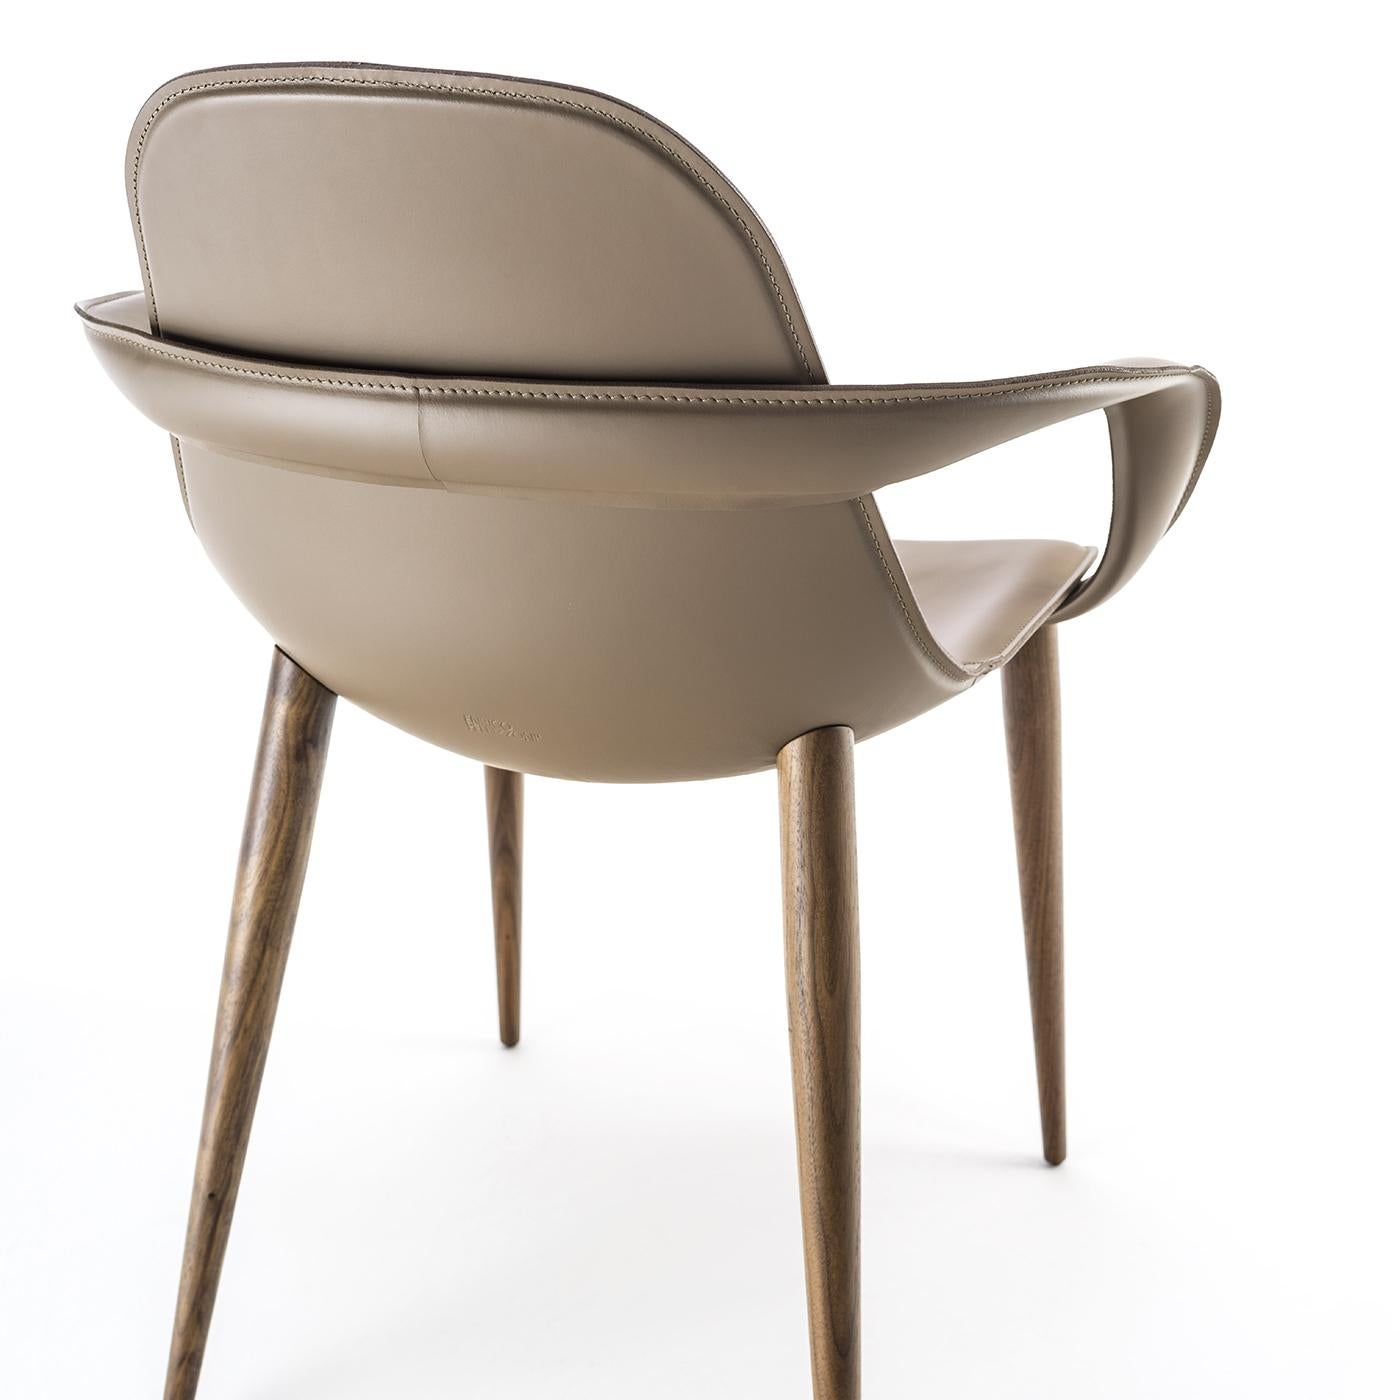 Cette chaise a été conçue pour s'adapter parfaitement à n'importe quel espace. La forme de l'assise soutient le dossier, assurant le confort, tandis que quatre pieds en noyer Canaletto soutiennent la structure. La coque est en aluminium, recouverte